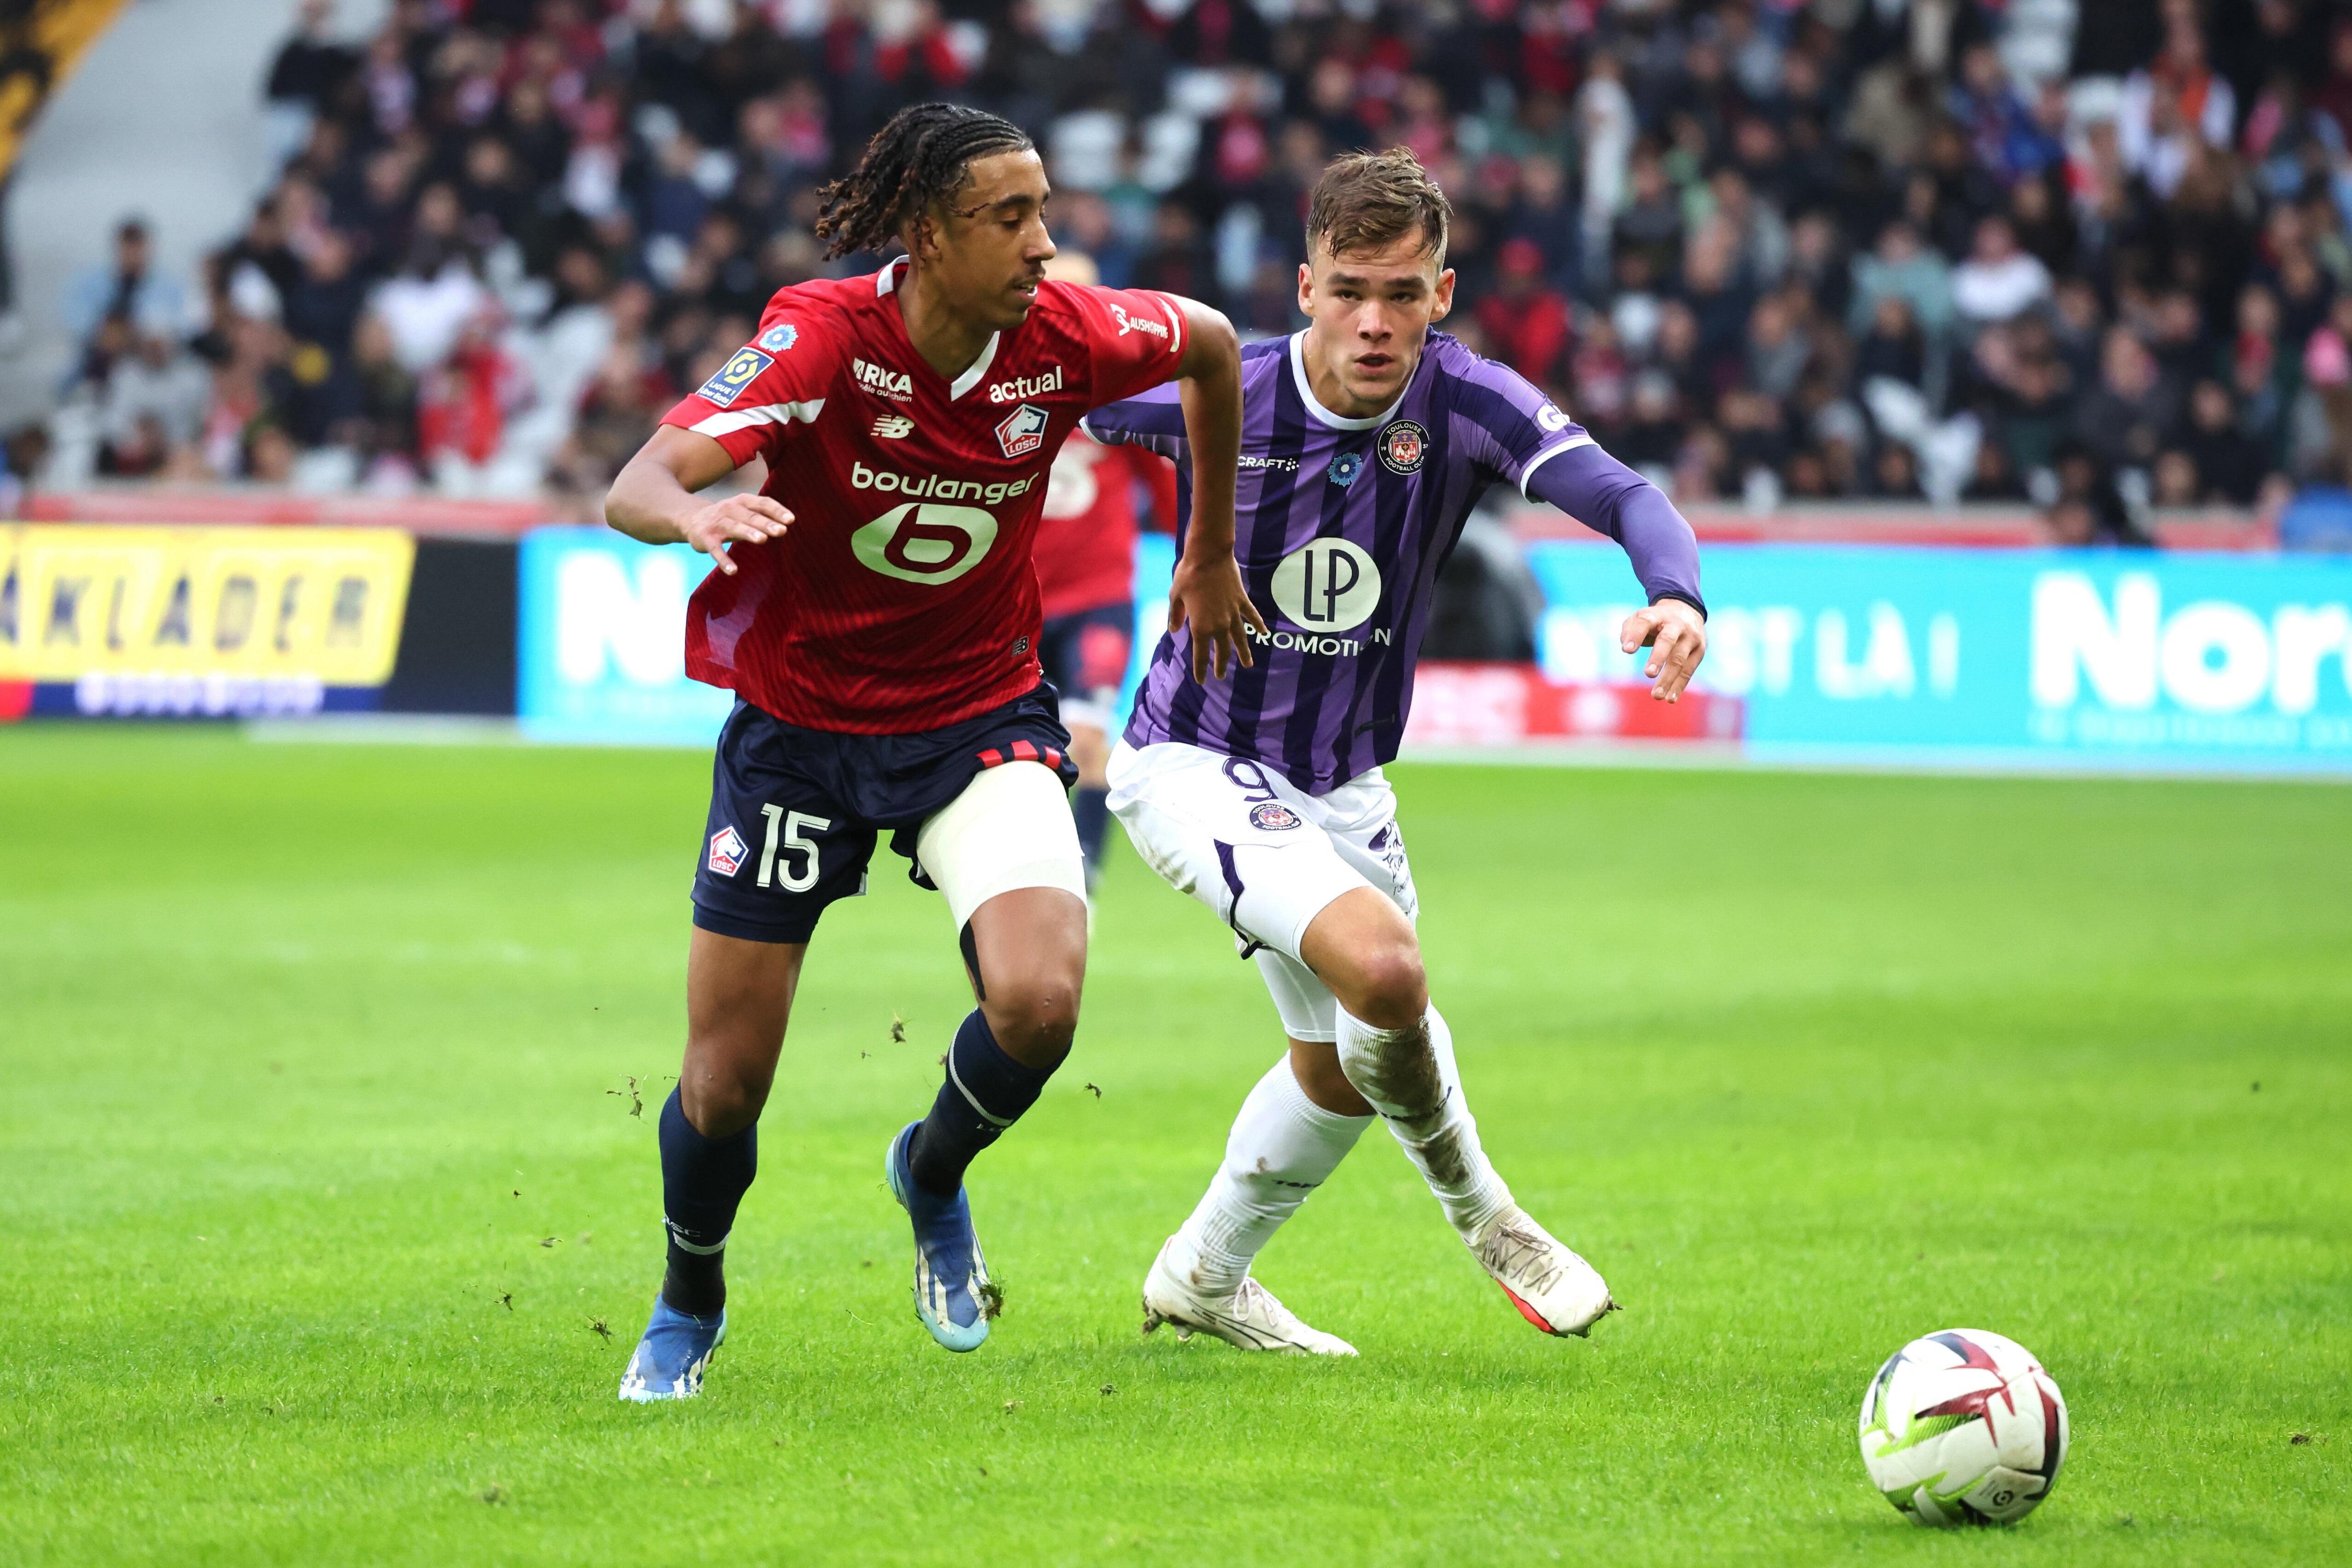 HL Ligue 1 - Lille 1 - 1 Tolouse